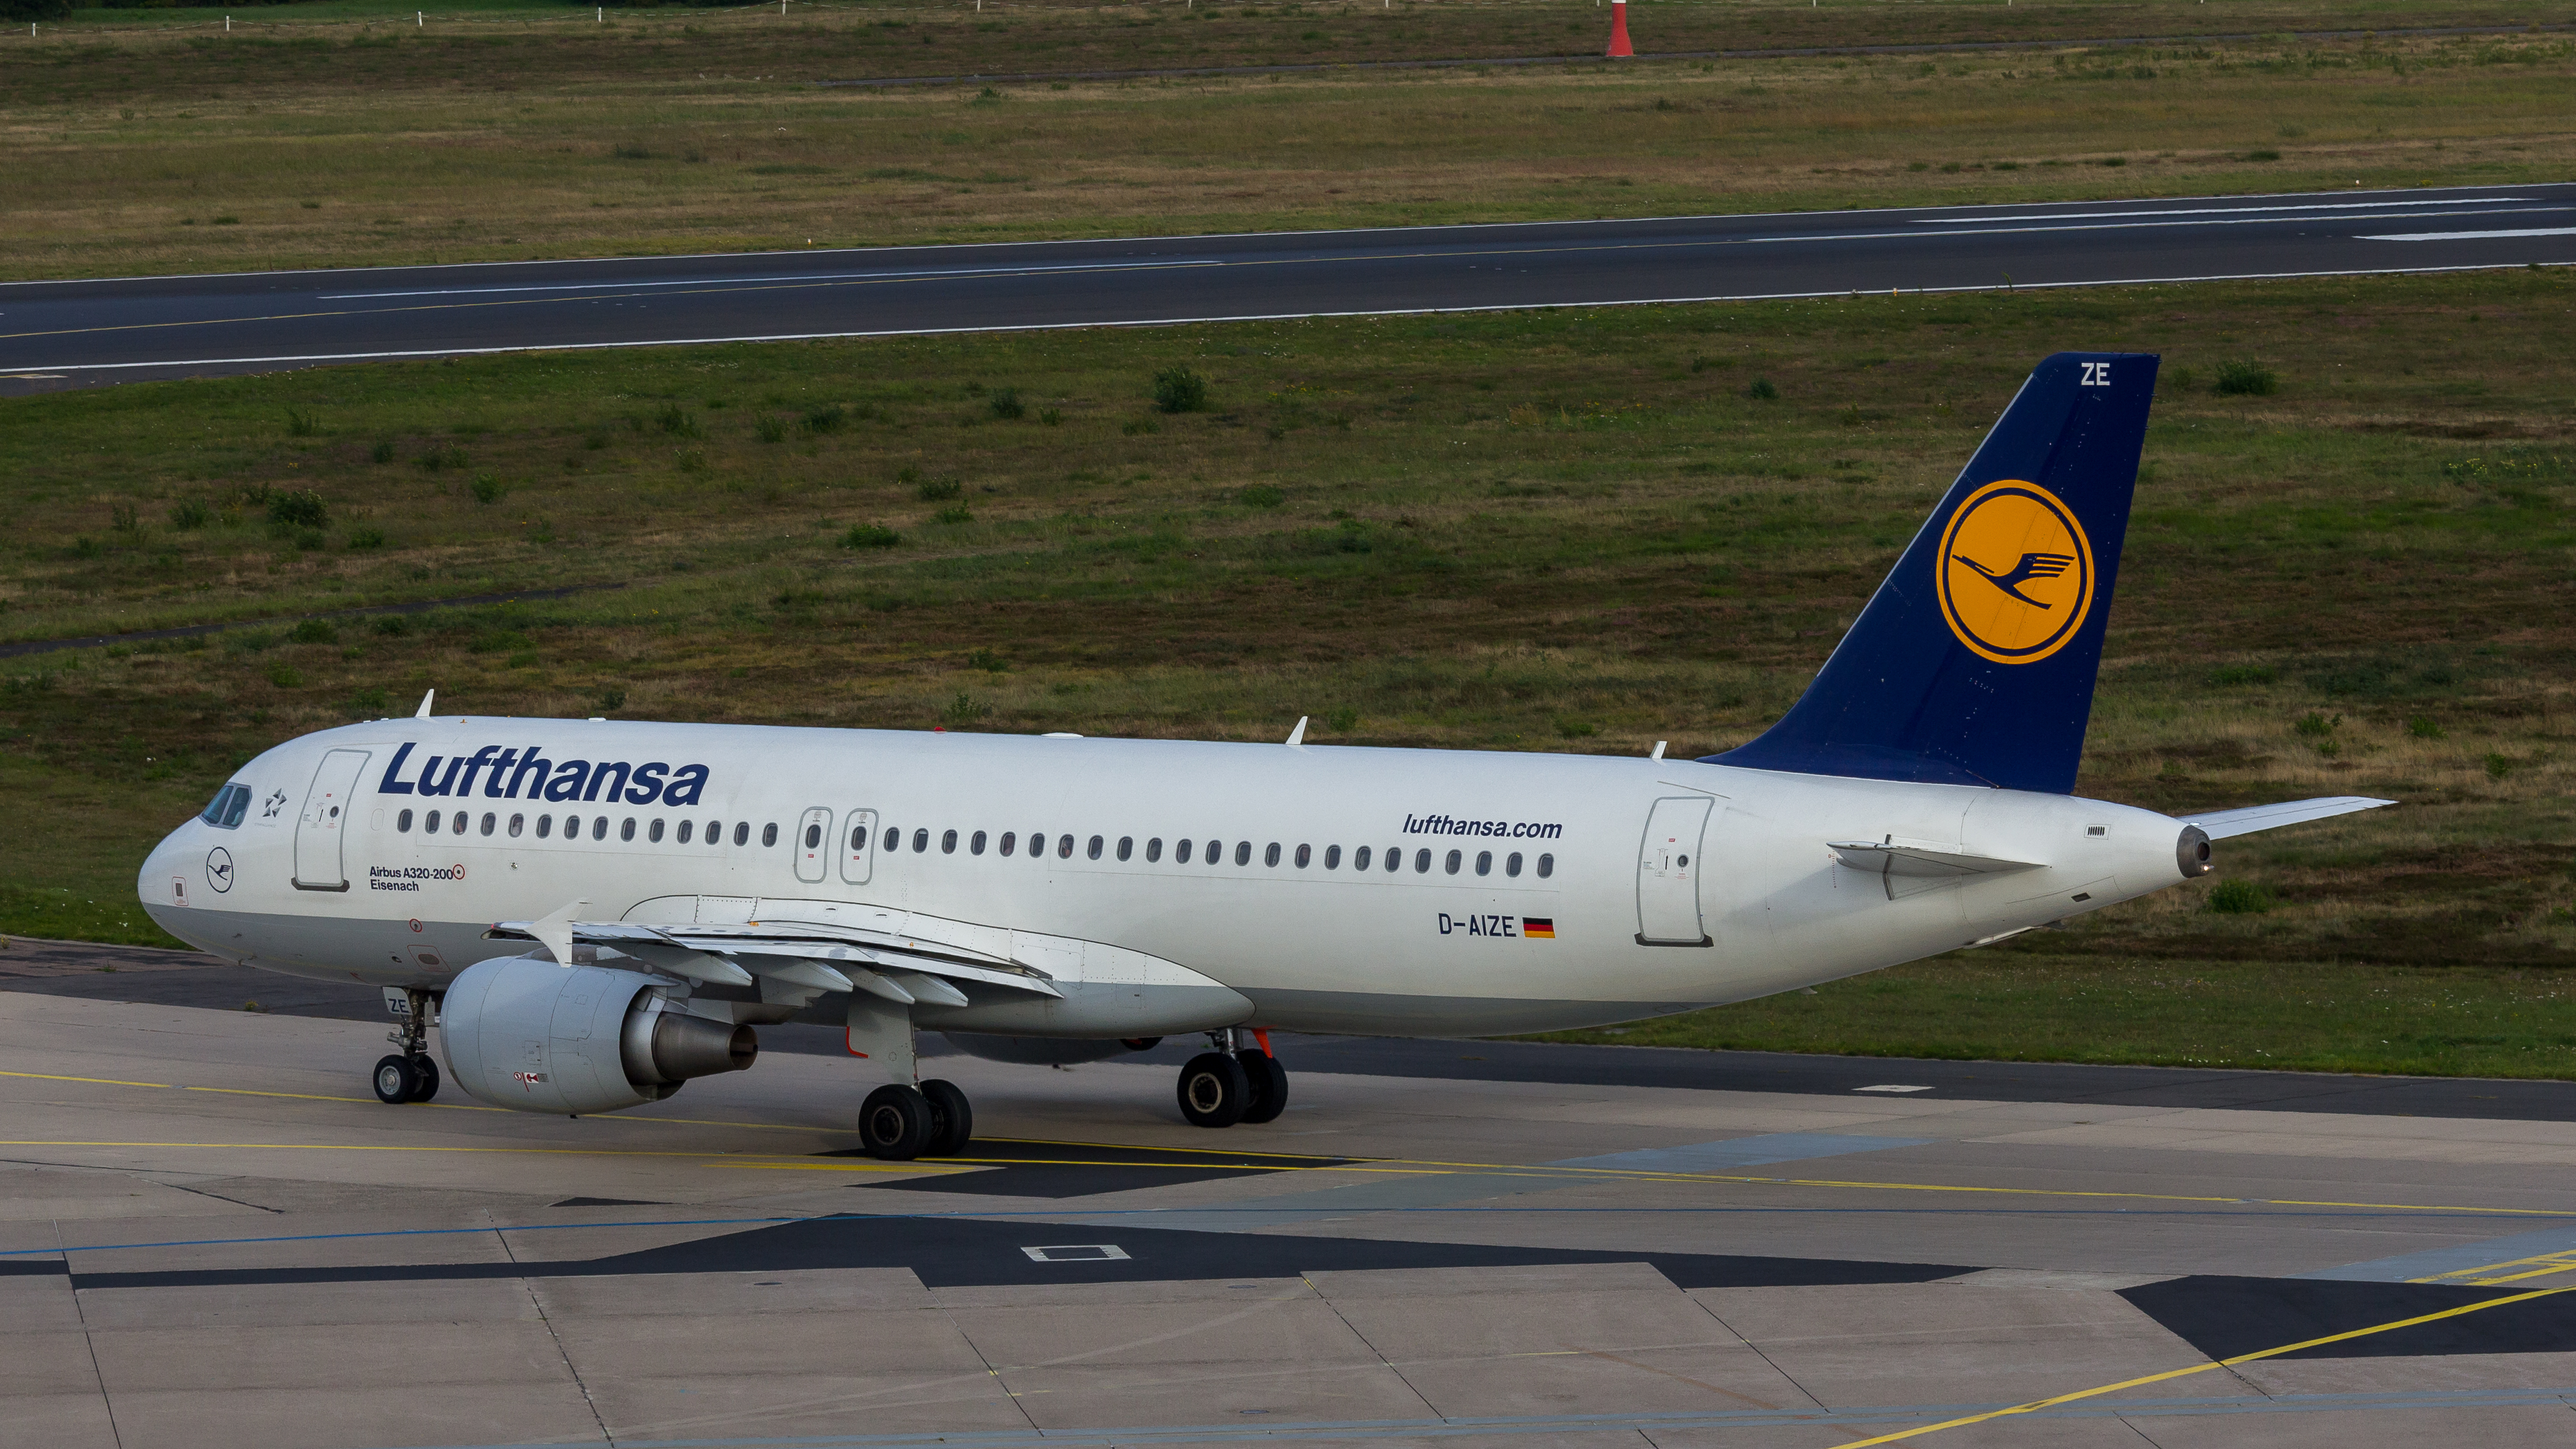 File:Lufthansa - Airbus A320-200 - D-AIZE (Eisenach) - Cologne